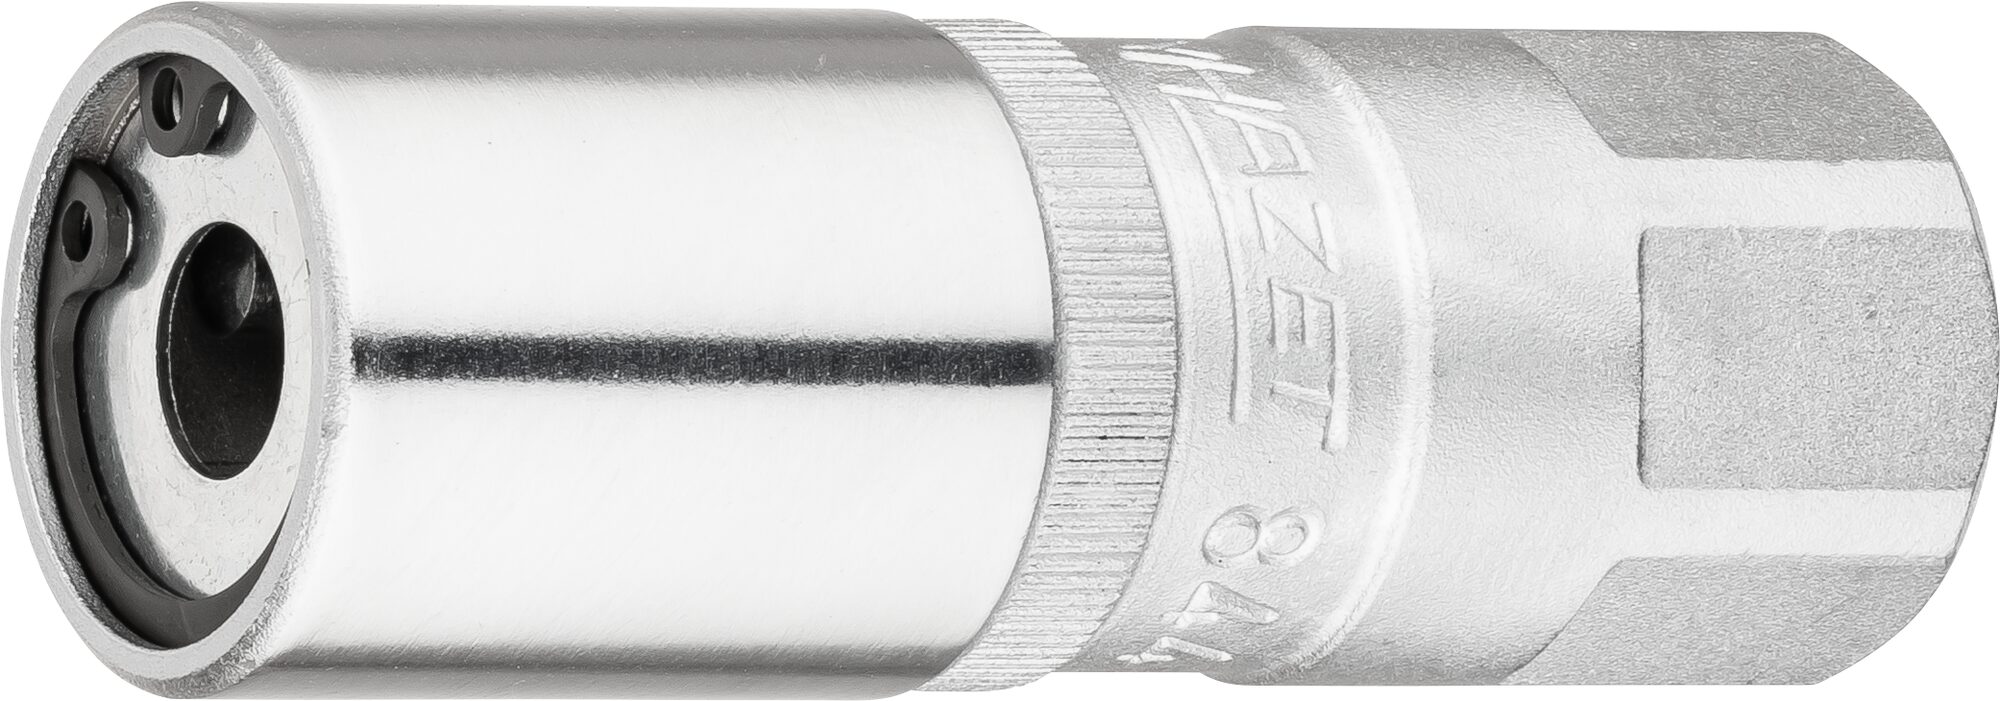 HAZET Stehbolzen-Ausdreher 844-8 · Vierkant hohl 12,5 mm (1/2 Zoll) · 23 mm